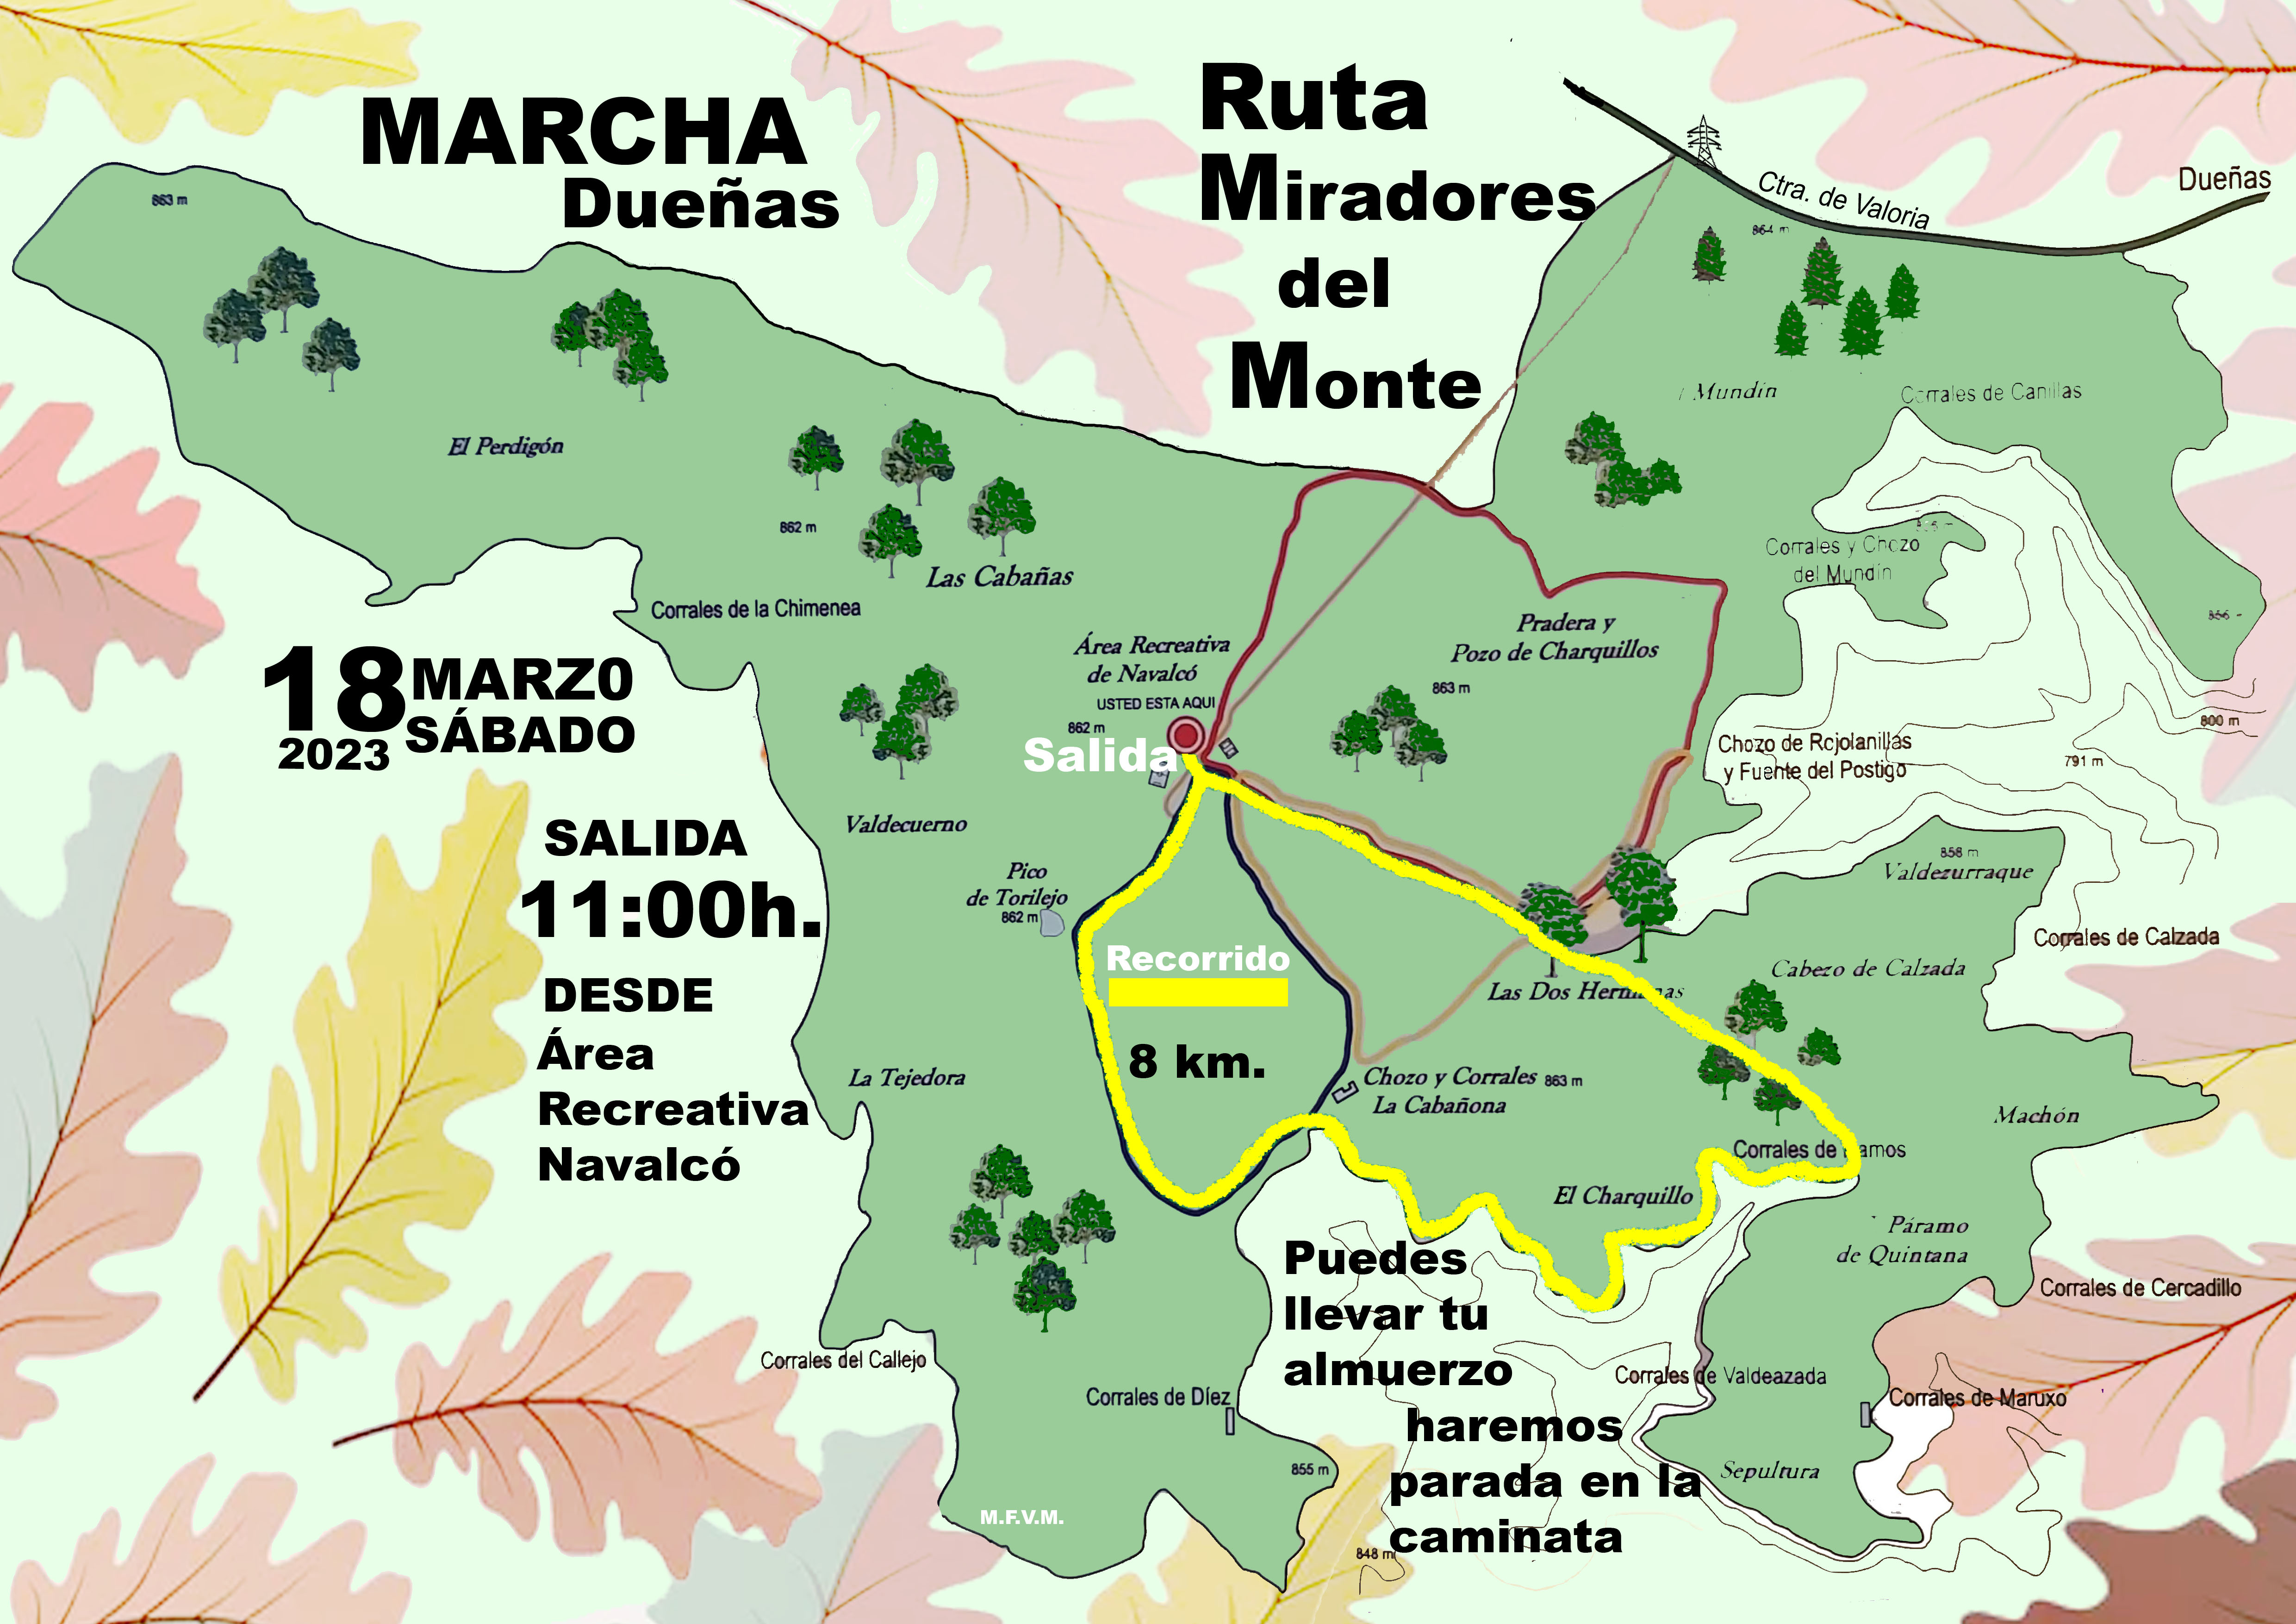 18 de marzo, marcha por la Ruta de los Miradores del Monte de la Villa de Dueñas